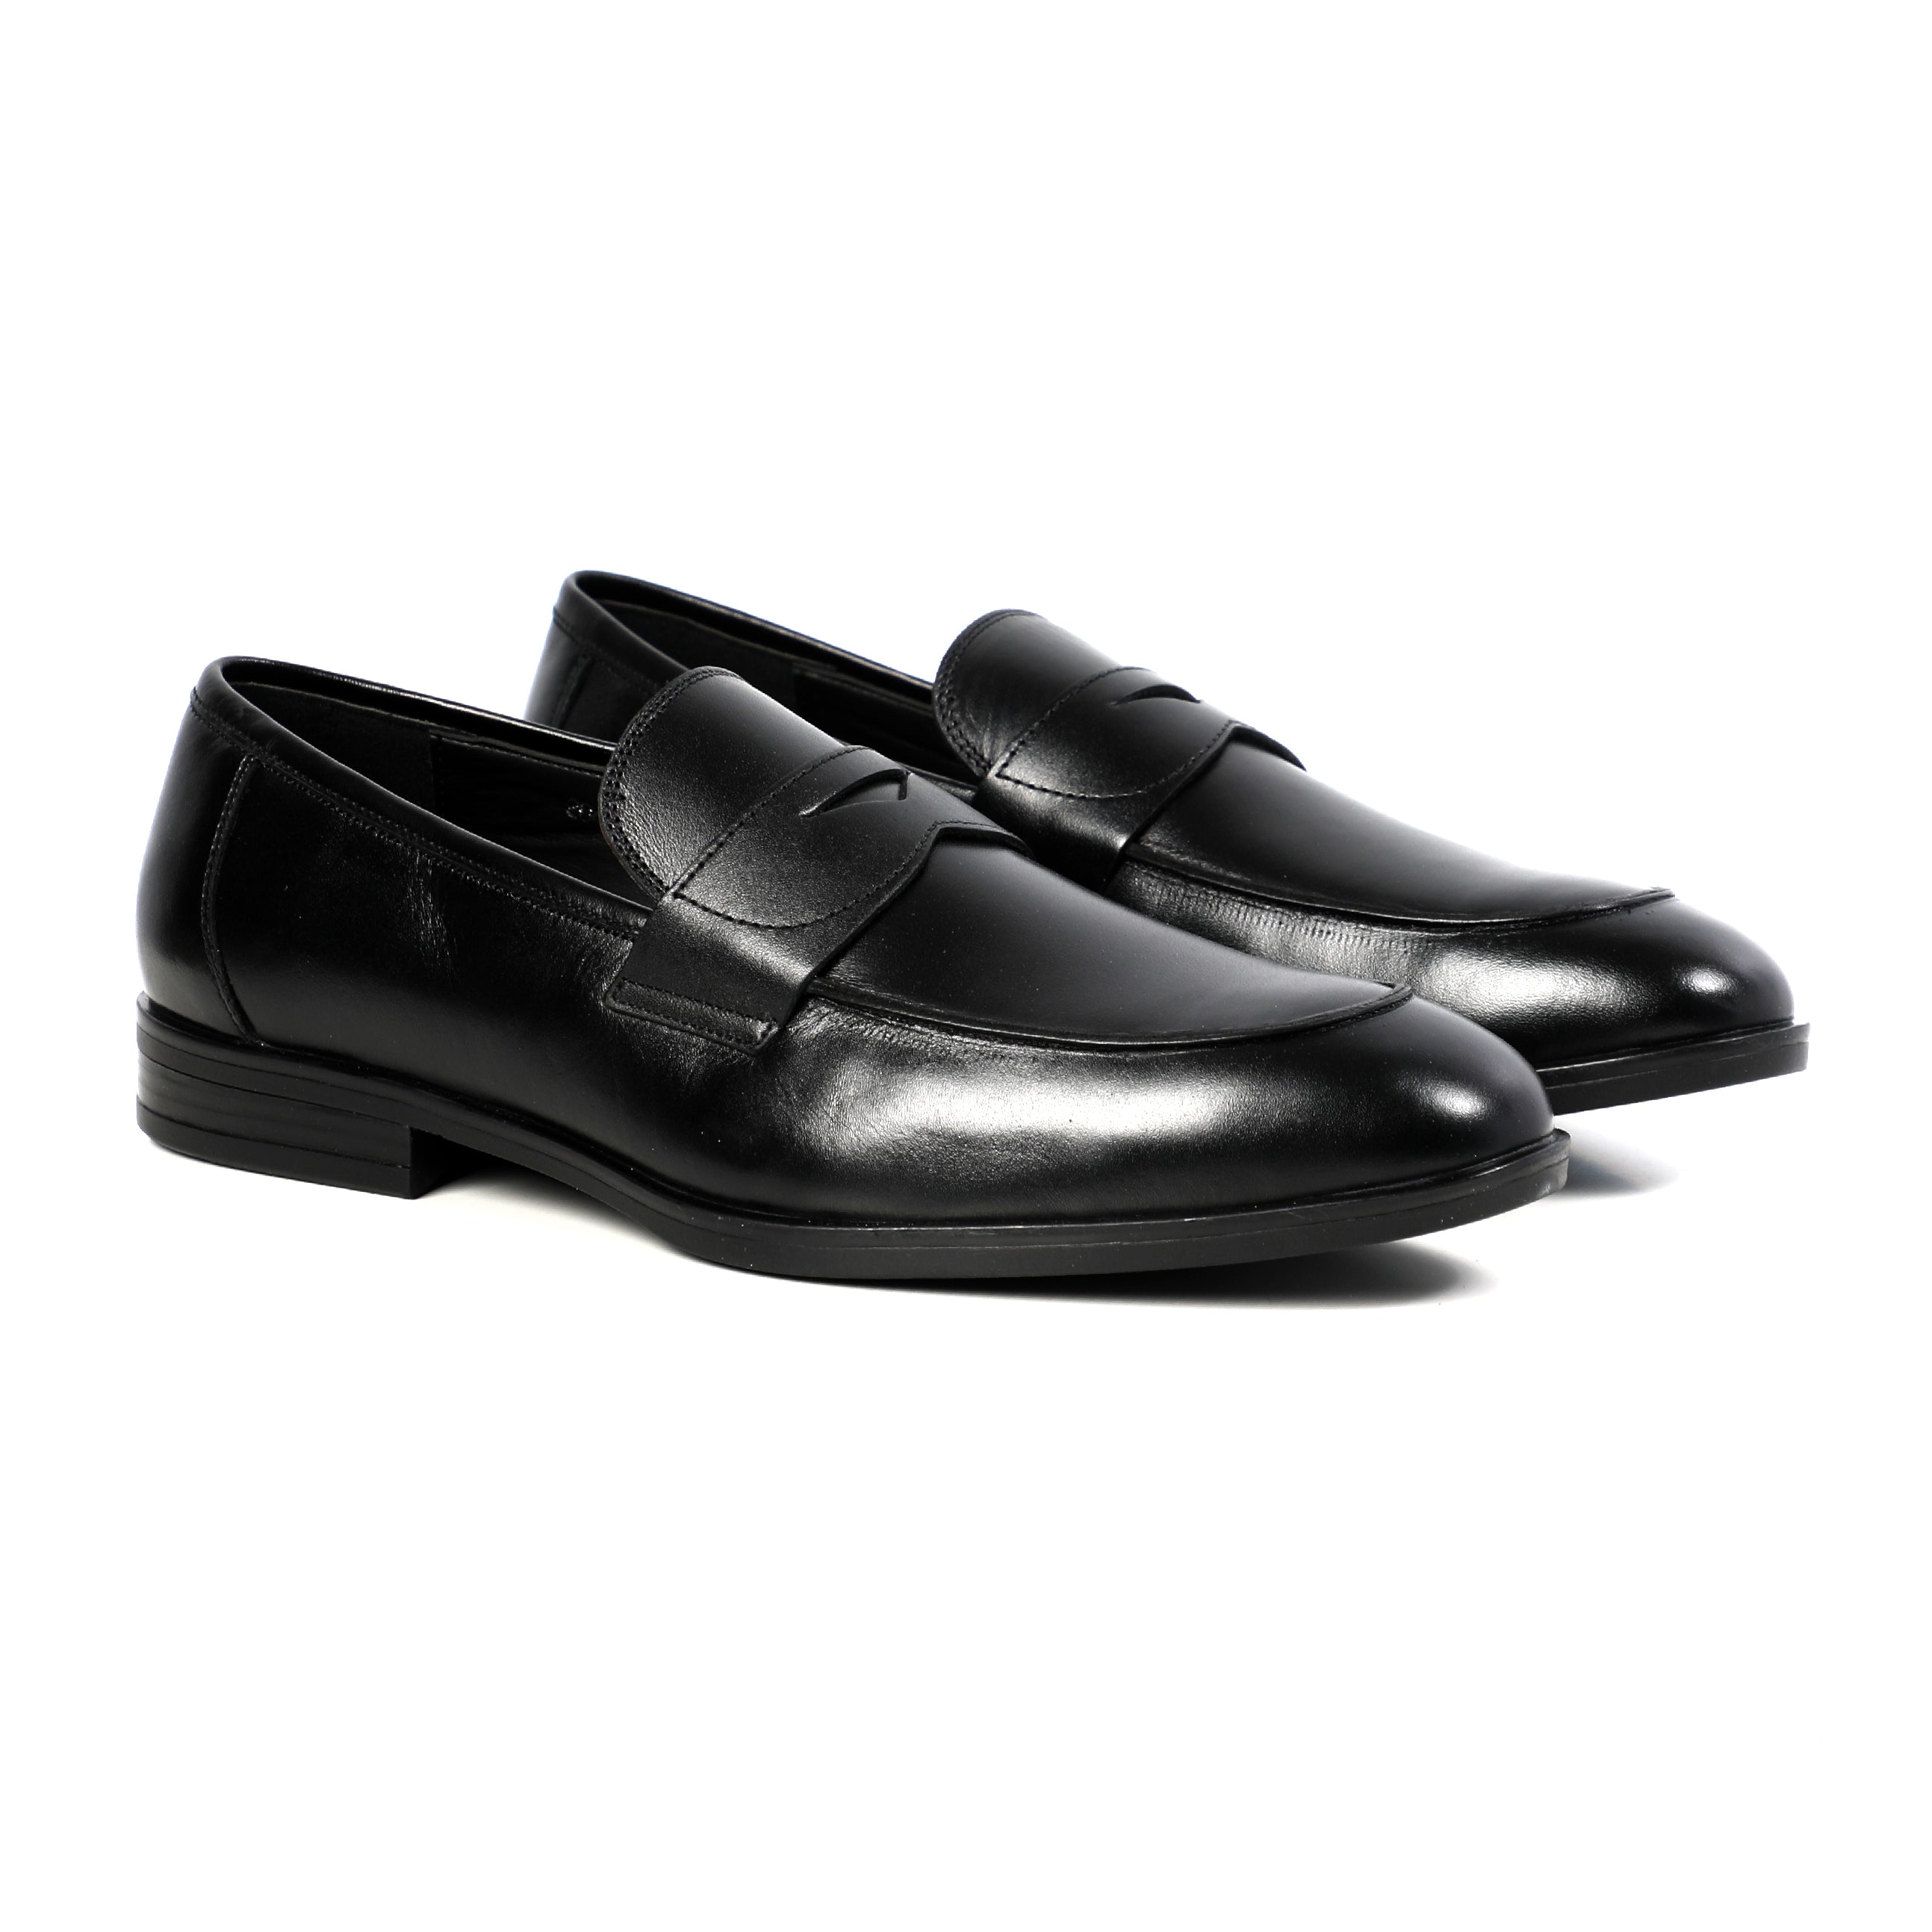 Men Black Classic Shoes With Unique Design